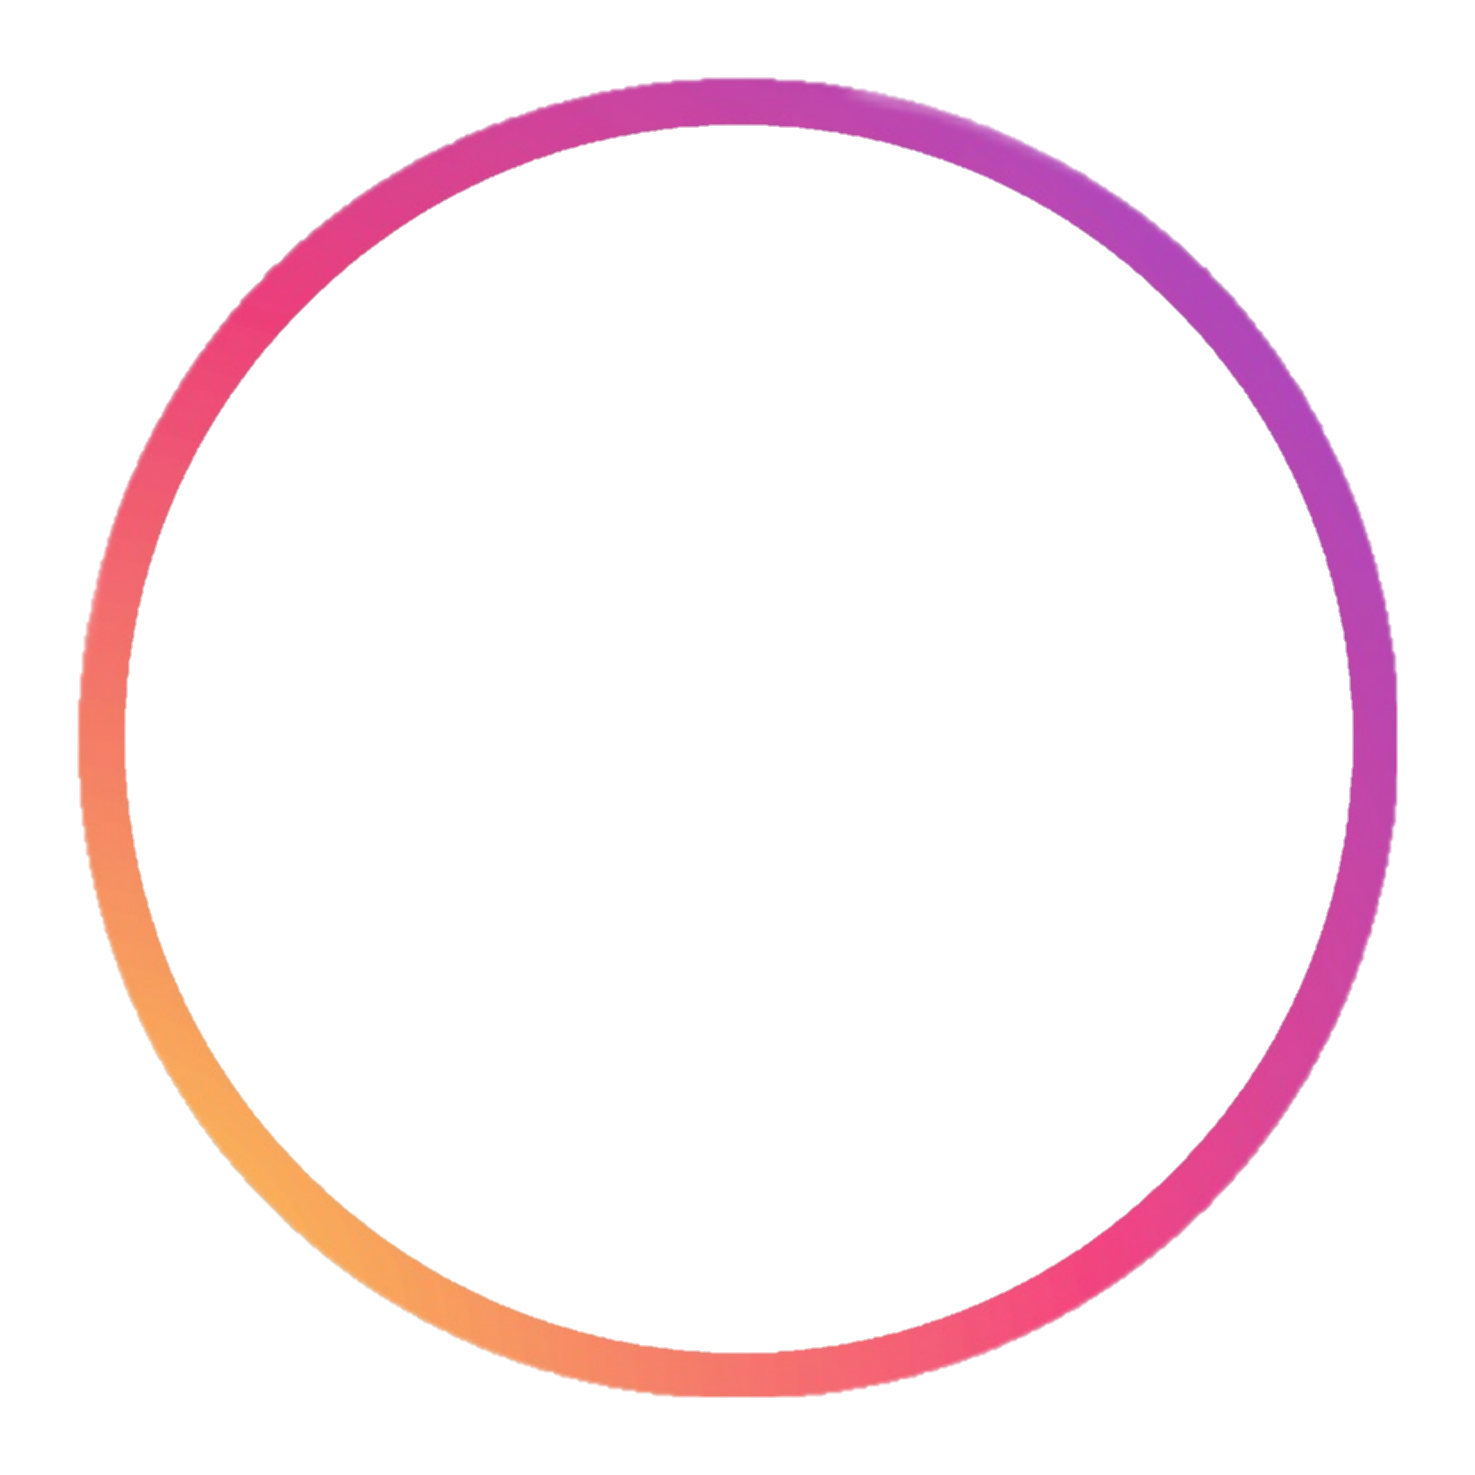 Далеко видно кругом прозрачна. Круг для сторис. Кружок обводка на прозрачном фоне. Красивый круг для логотипа. Круглая рамка.